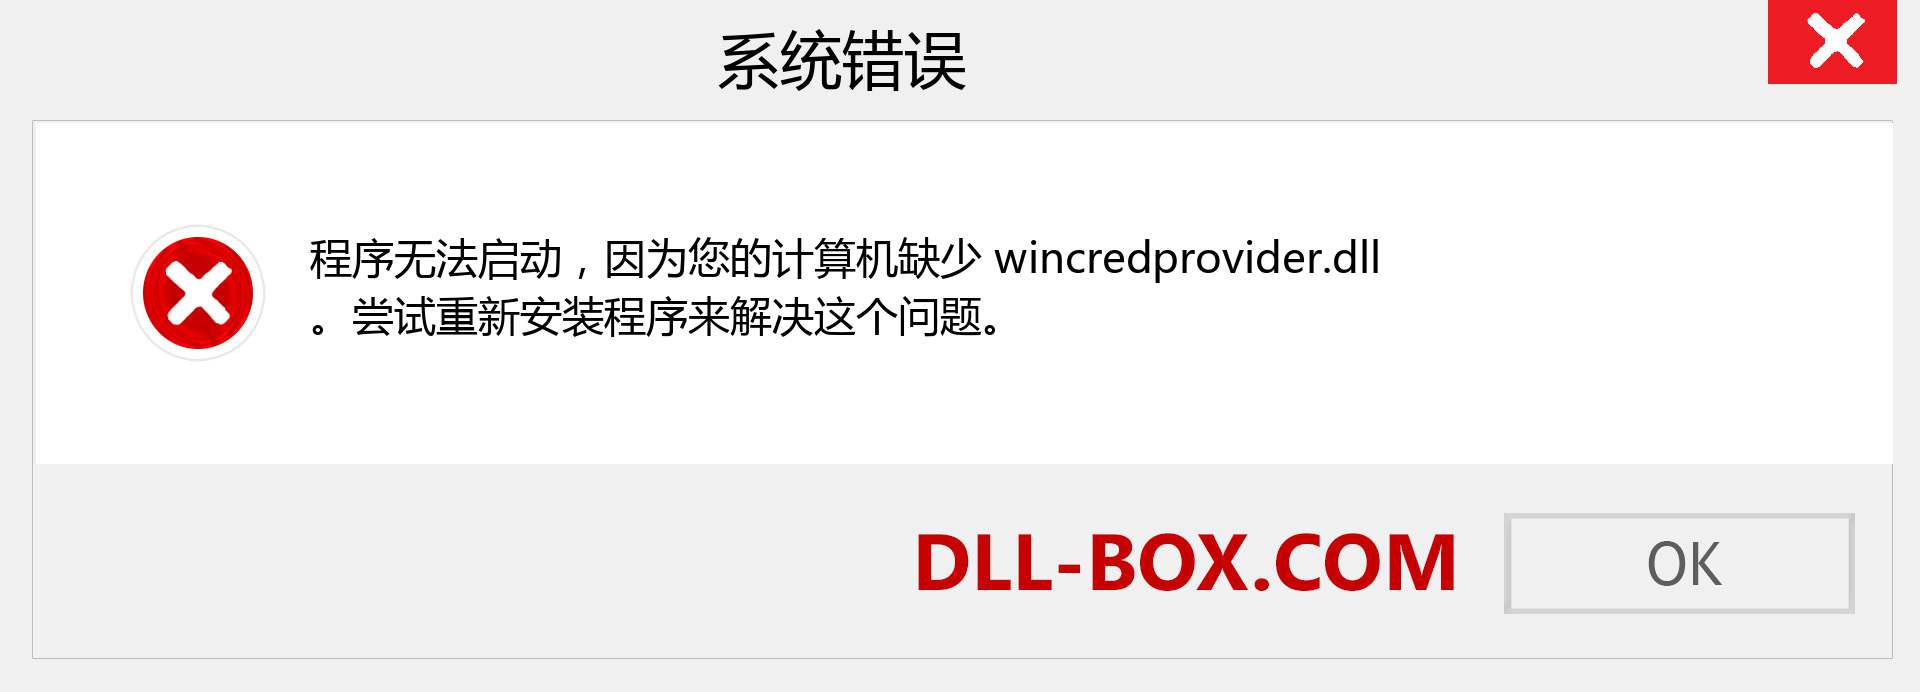 wincredprovider.dll 文件丢失？。 适用于 Windows 7、8、10 的下载 - 修复 Windows、照片、图像上的 wincredprovider dll 丢失错误